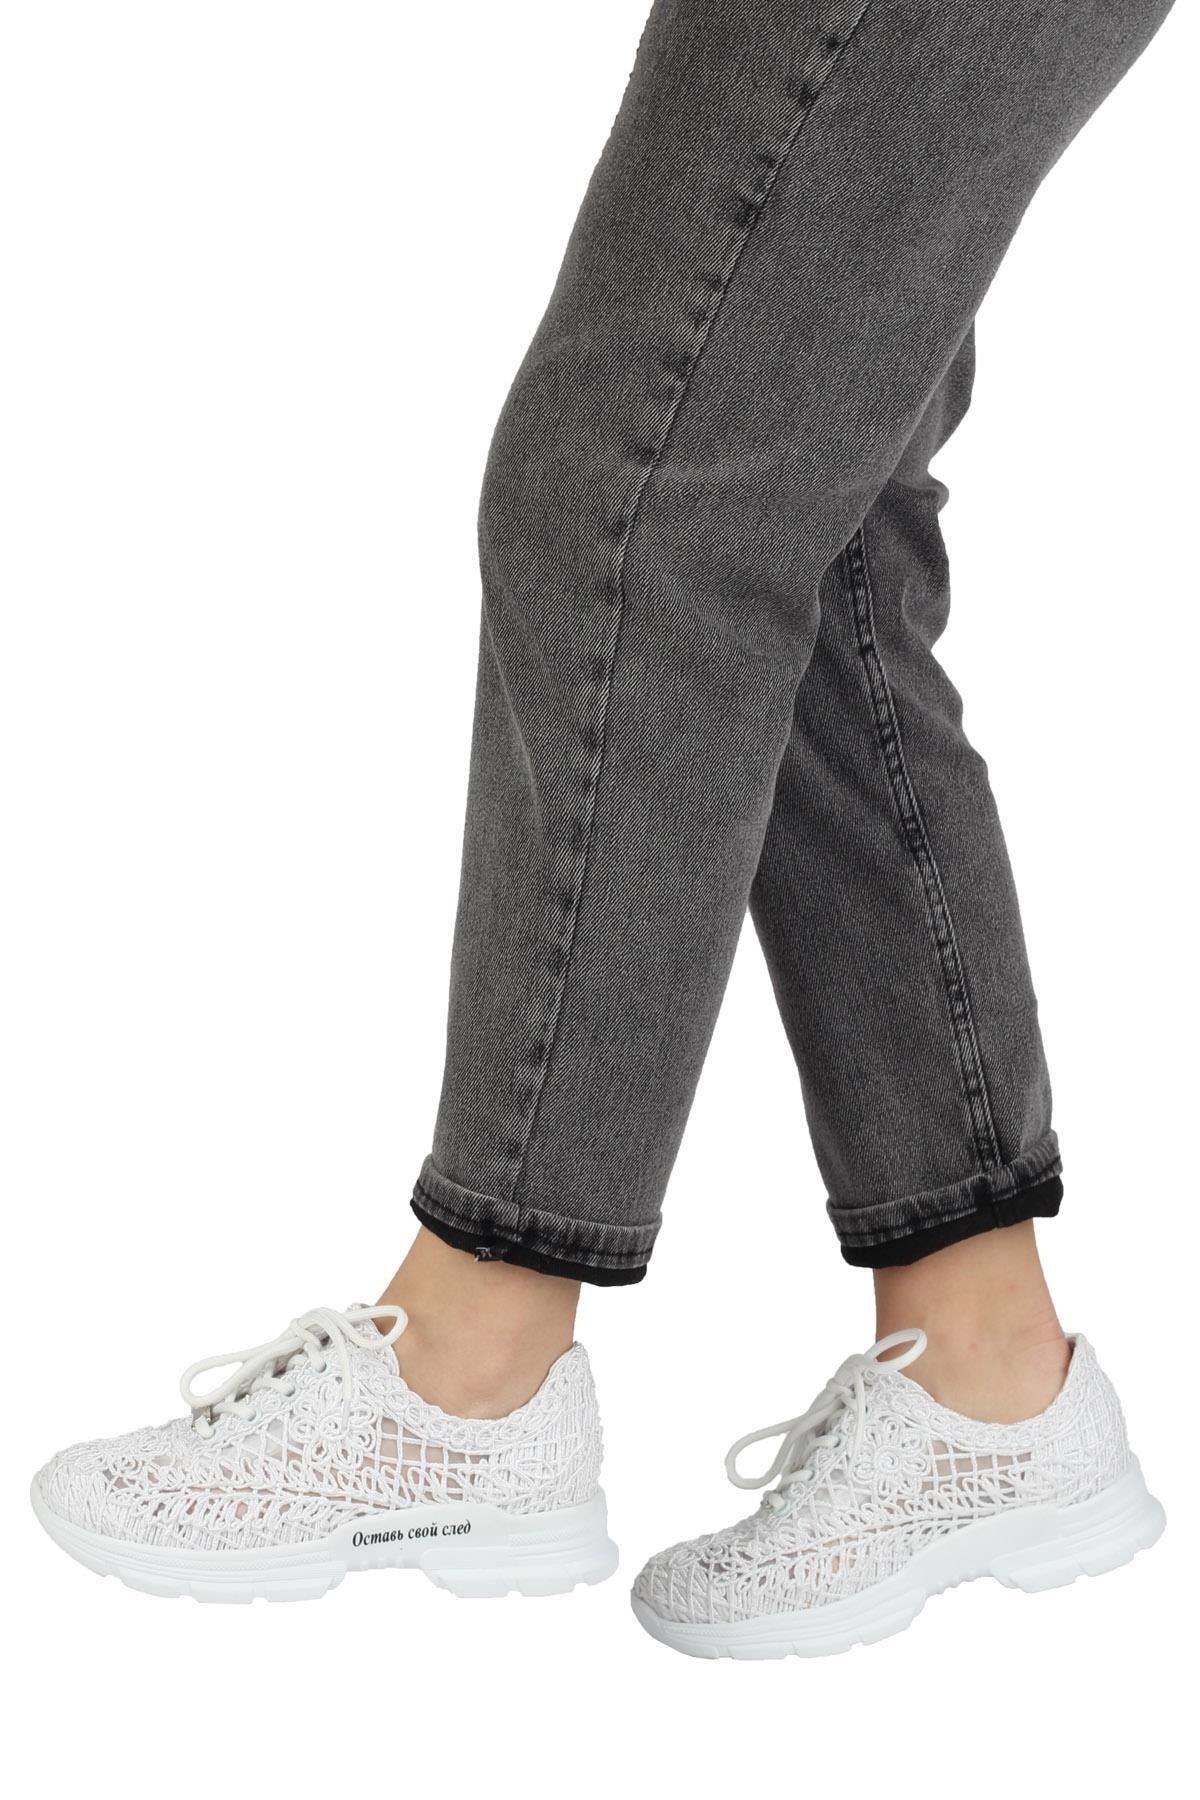 Modabuymus Beyaz Dantel Örgülü Sneaker Yazlık Spor Ayakkabı - Molina